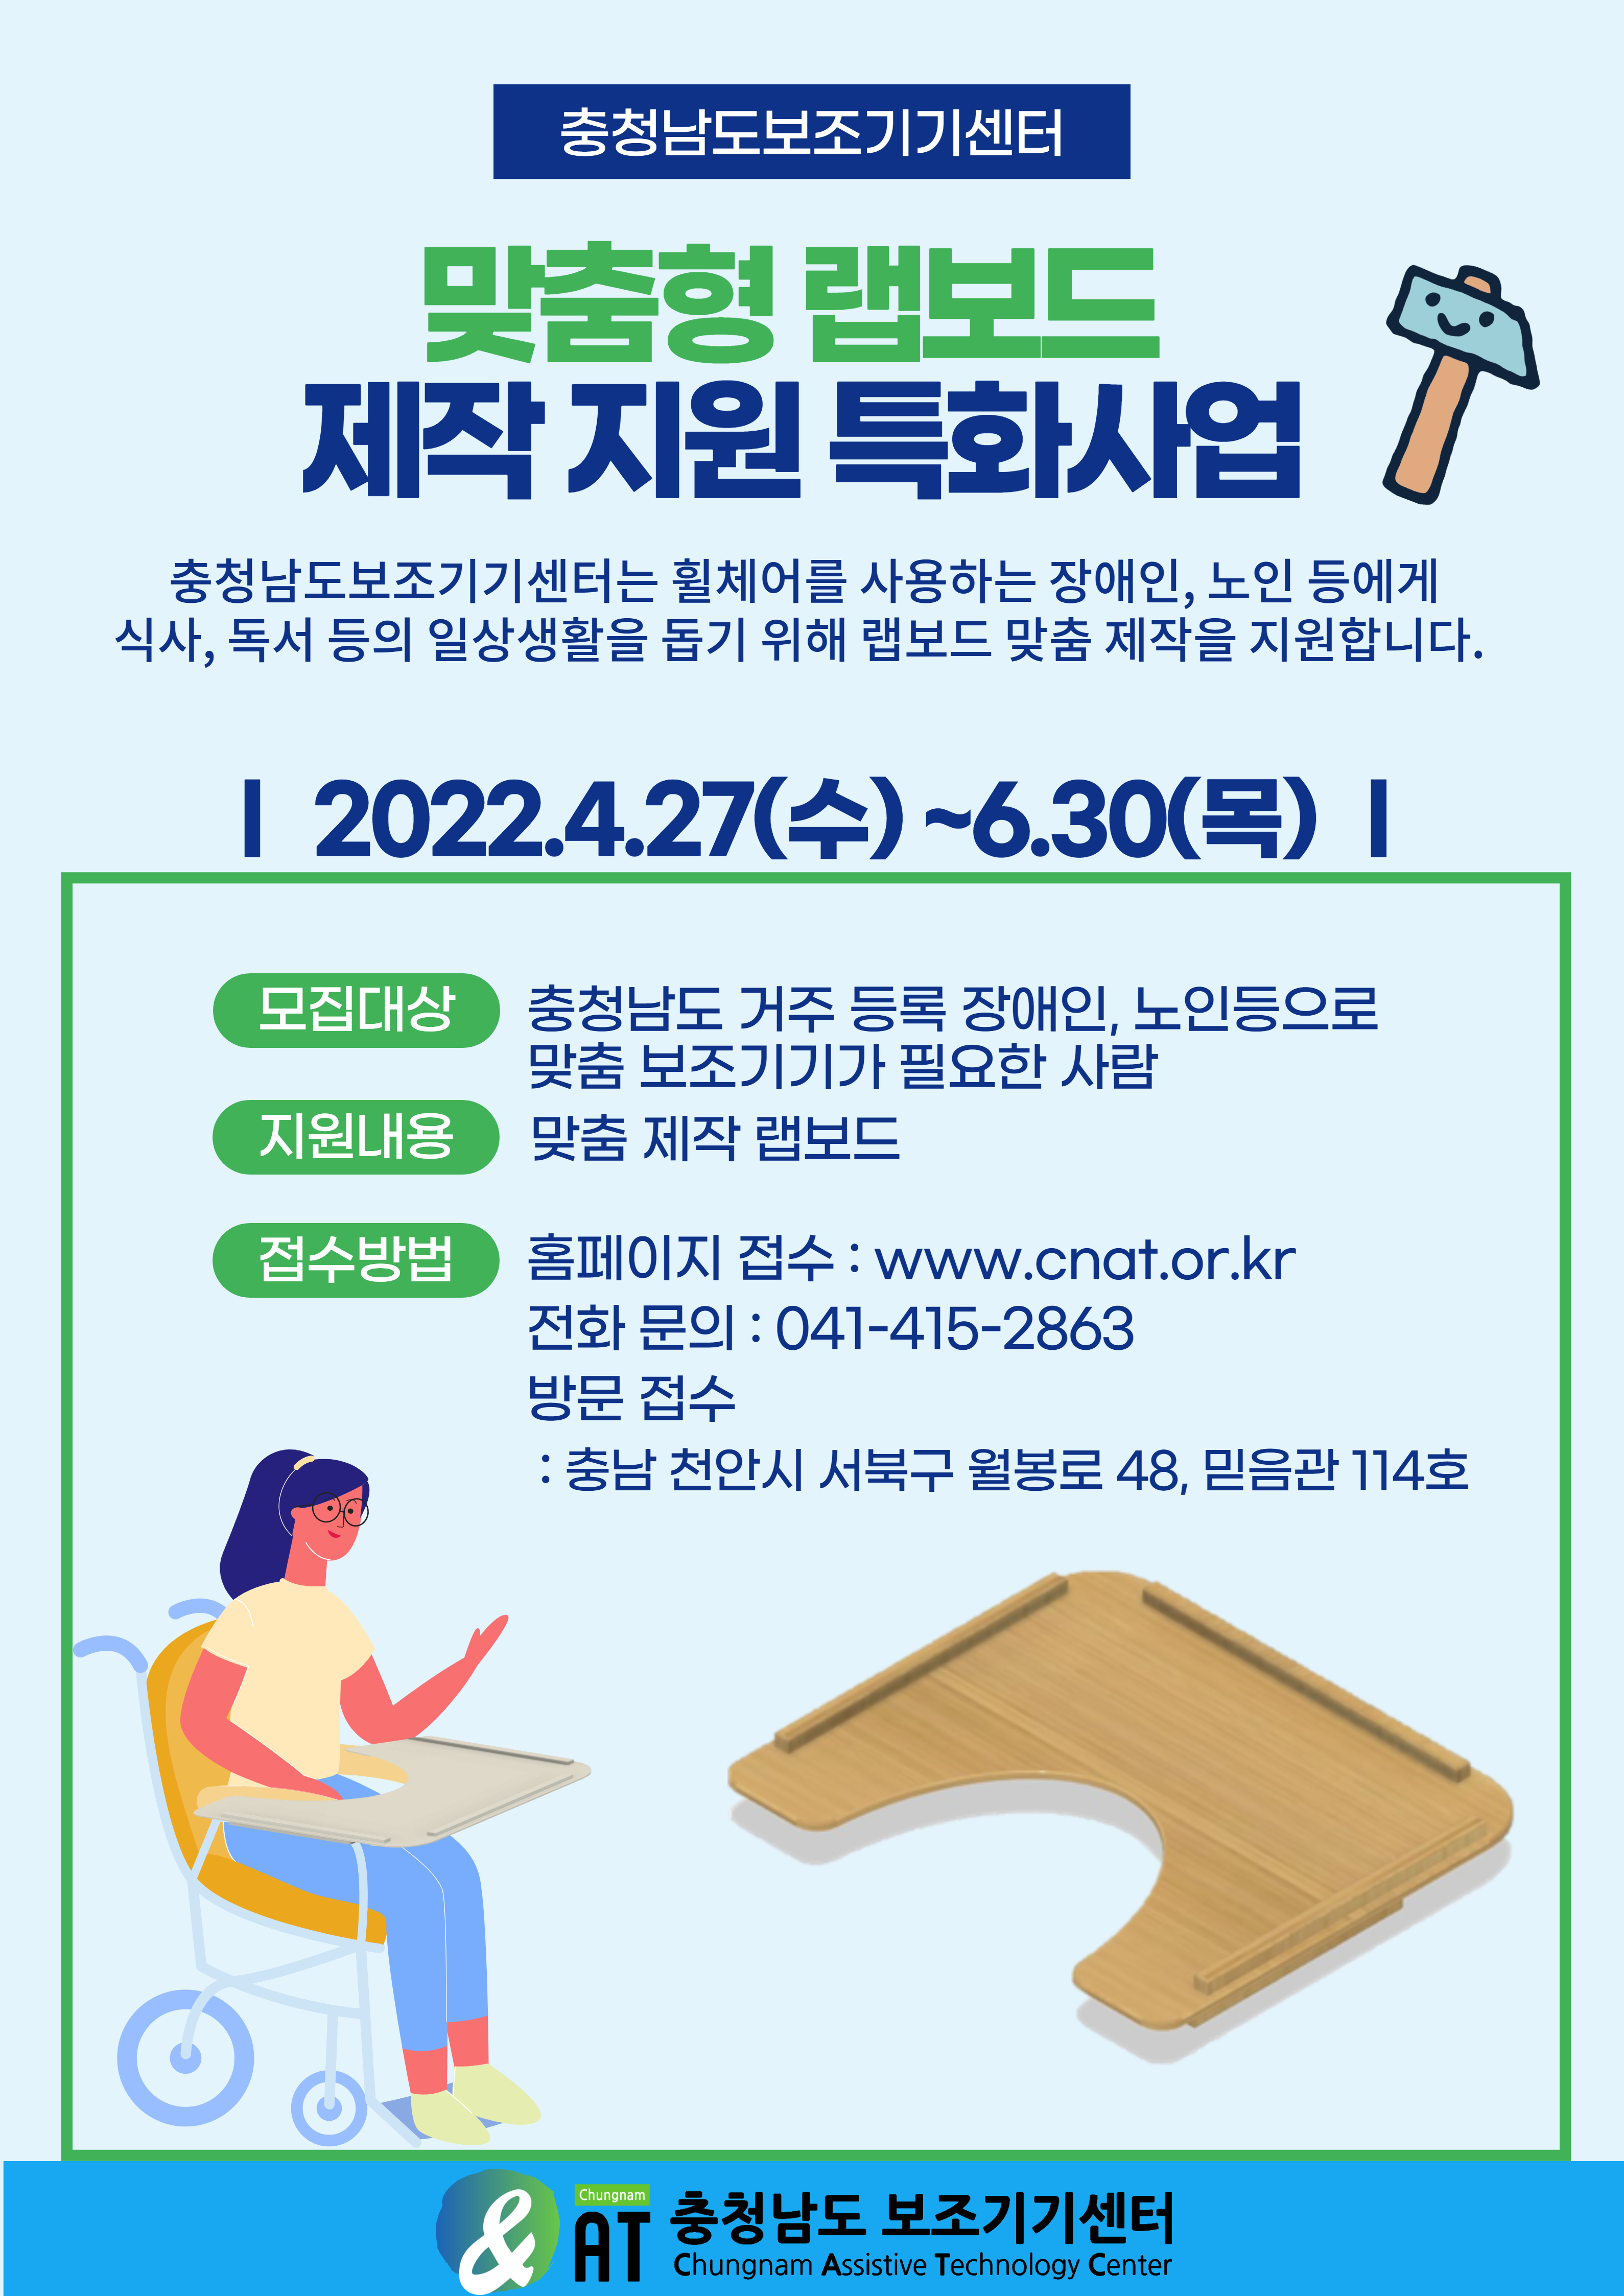 2022 충남보조기기센터 맞춤형 랩보드 제작 지원특화사업 [~6/30(목)]